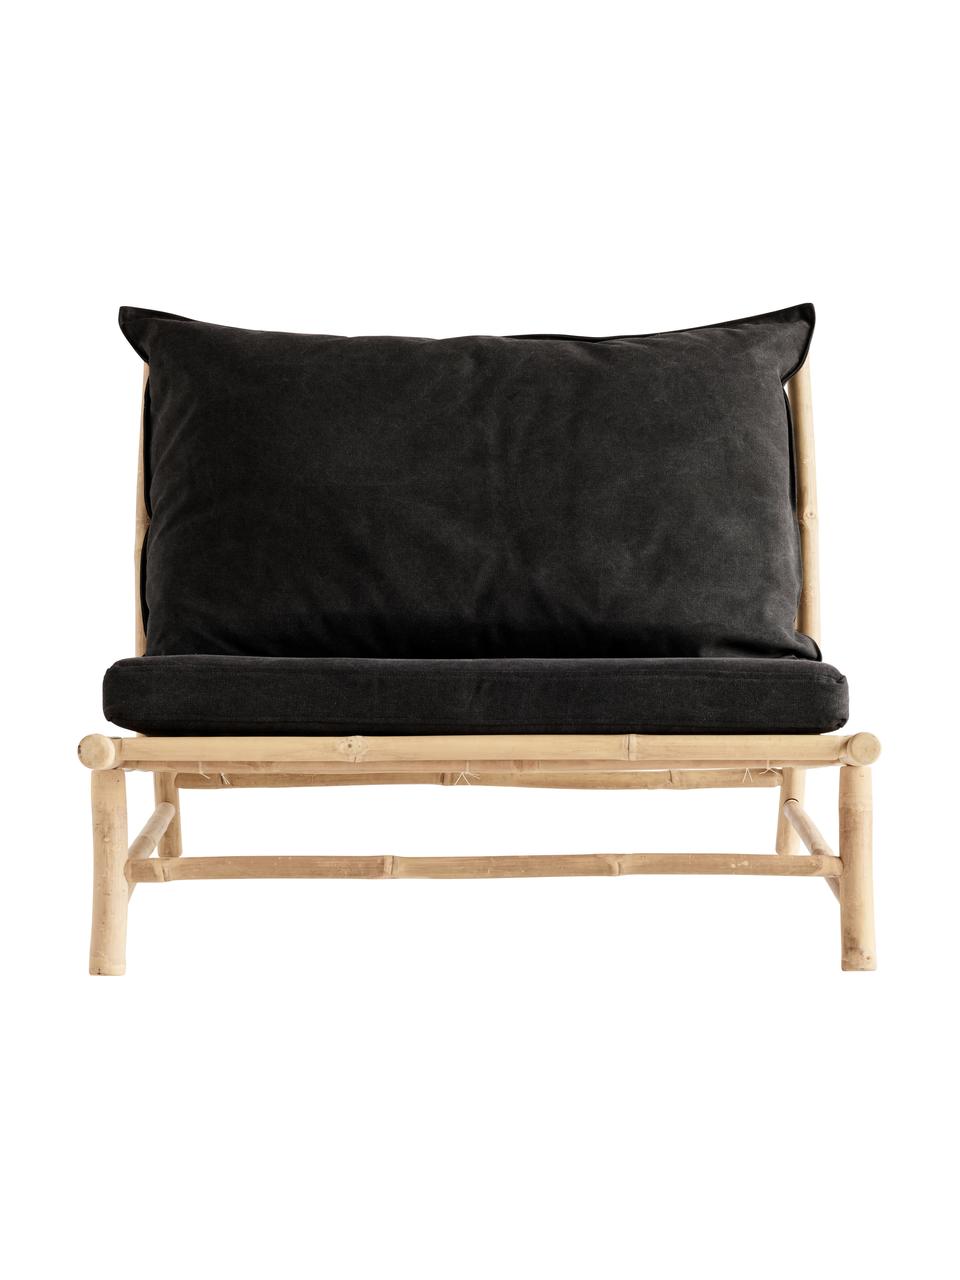 Fotel wypoczynkowy XL z drewna bambusowego Bamslow, Stelaż: drewno bambusowe, Tapicerka: 100% bawełna, Ciemny szary, brązowy, S 100 x G 87 cm